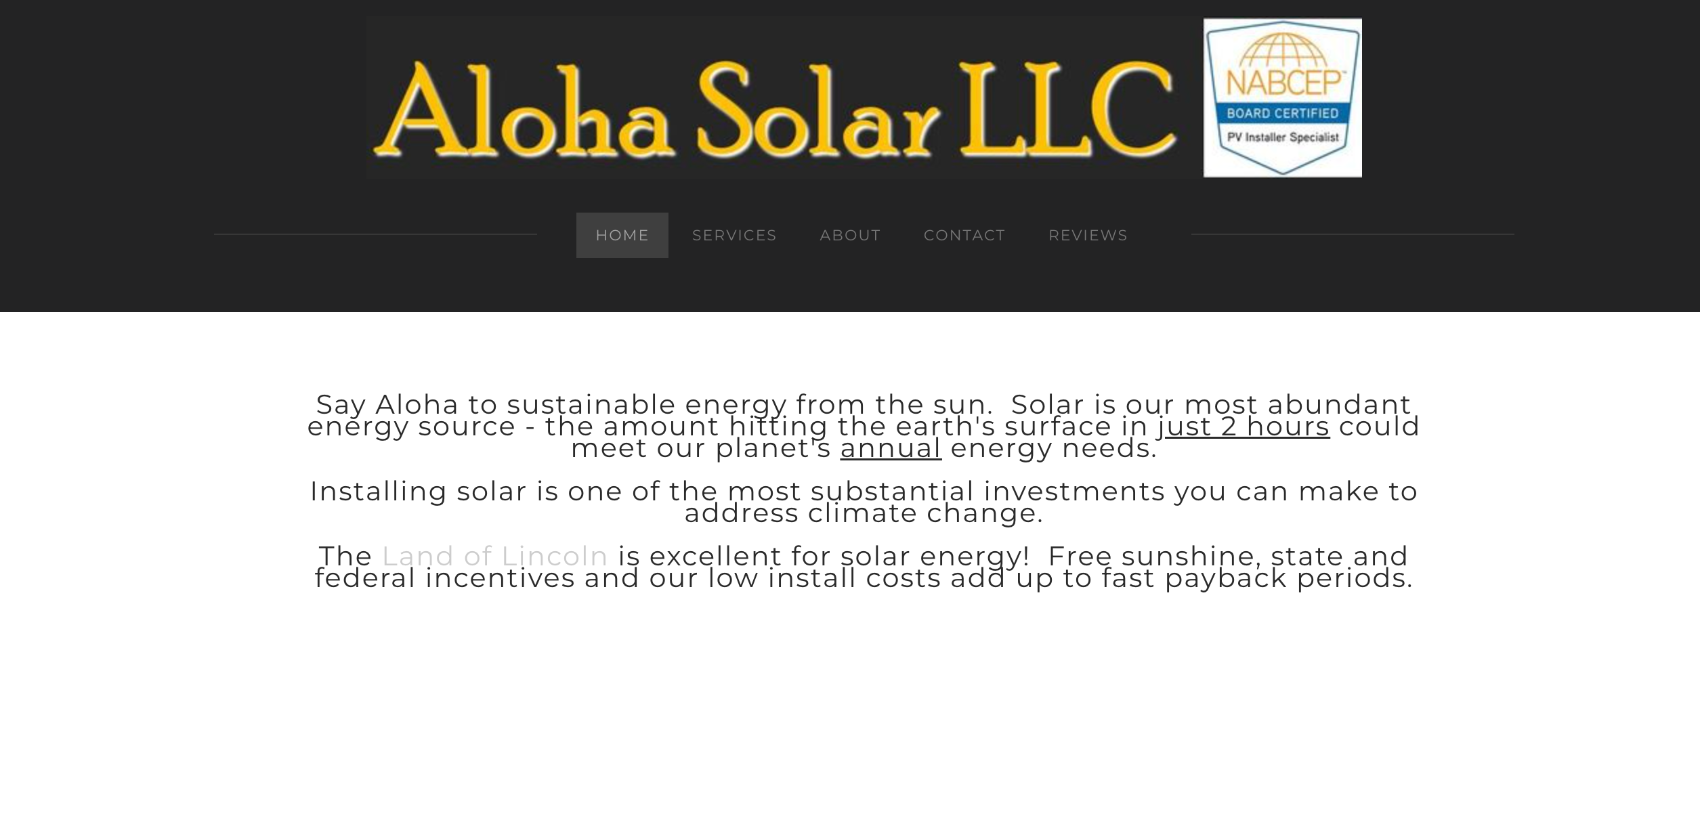 Aloha Solar LLC